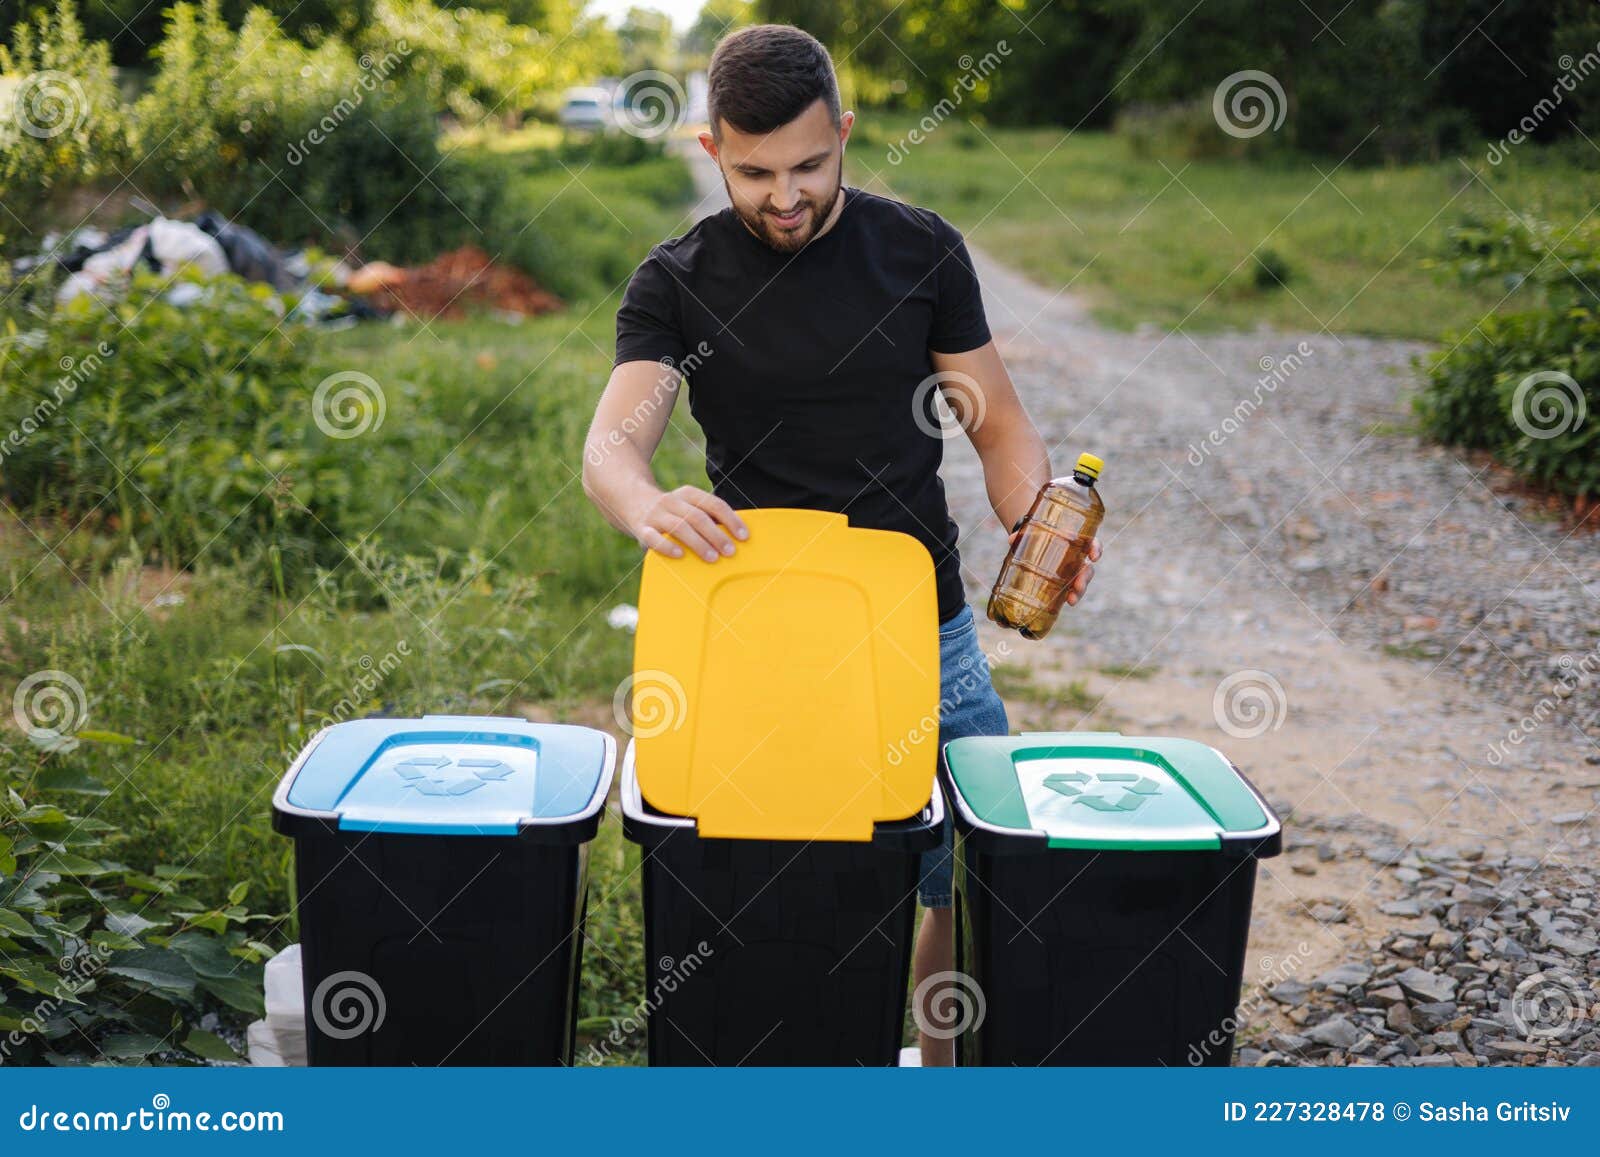 chico lindo tirando basura en la papelera de reciclaje